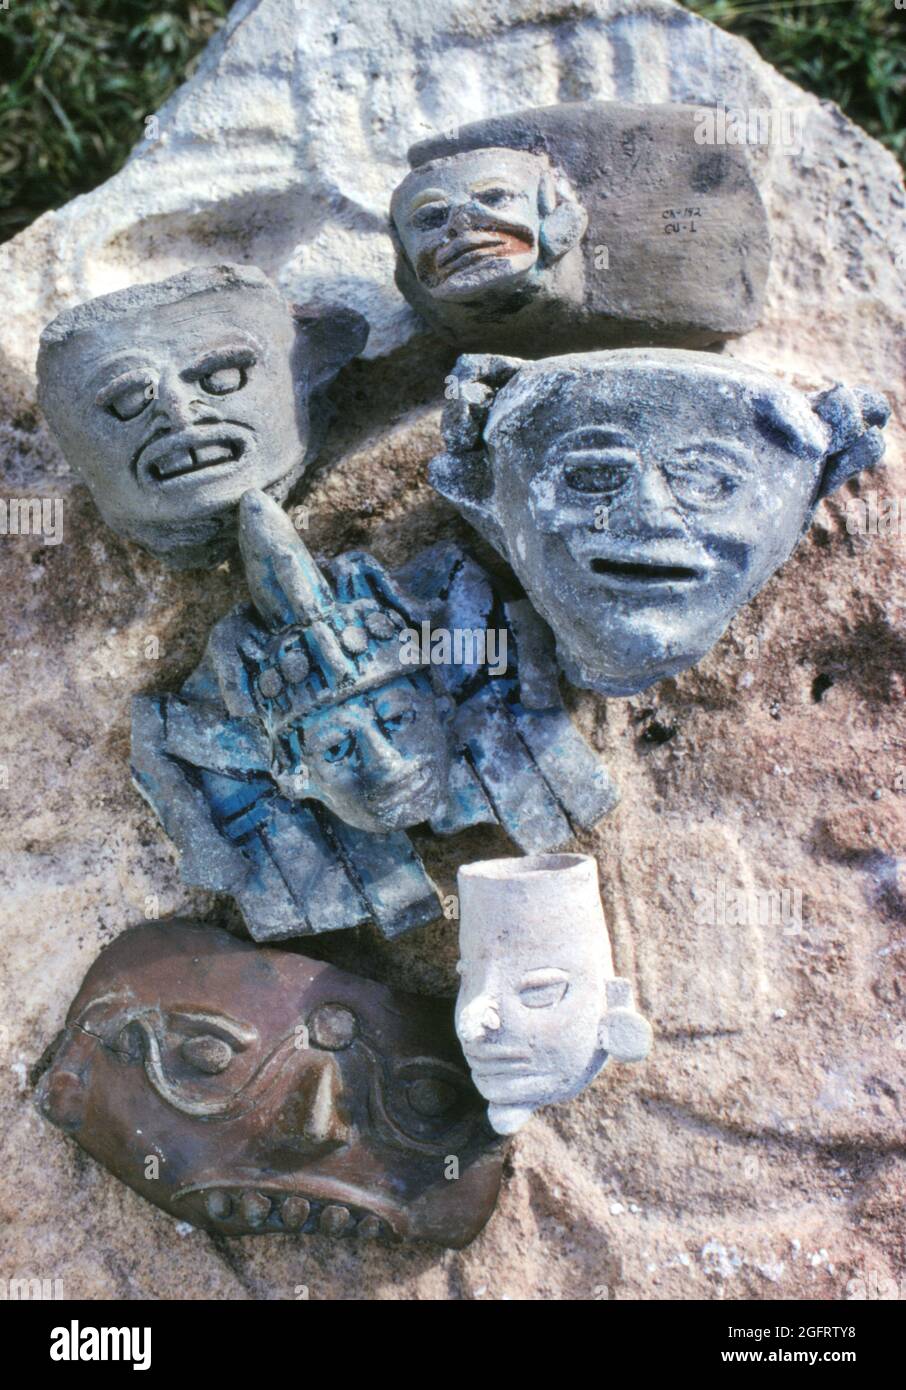 Facce in ceramica recuperate dal cenote sacro a Chichen Itza dalla squadra archeologica del 1967 sotto la guida di Román Piña Chán. Foto di Phillip Harrington Foto Stock